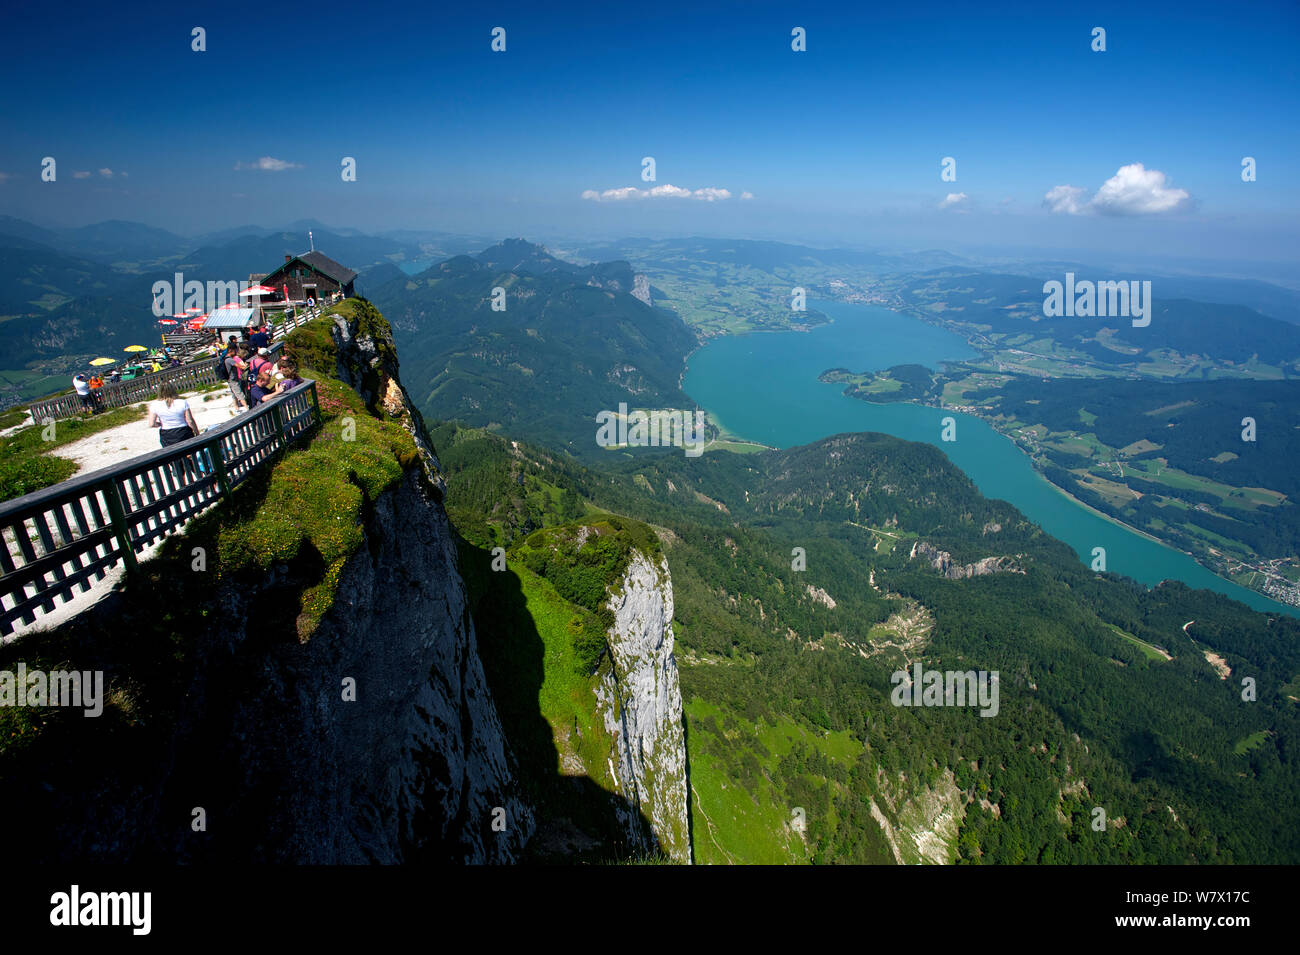 Mondsee von der Spitze des Mount Shafberg mit touristischen Einrichtungen gesehen im Sommer. Österreich, Juli 2013. Stockfoto